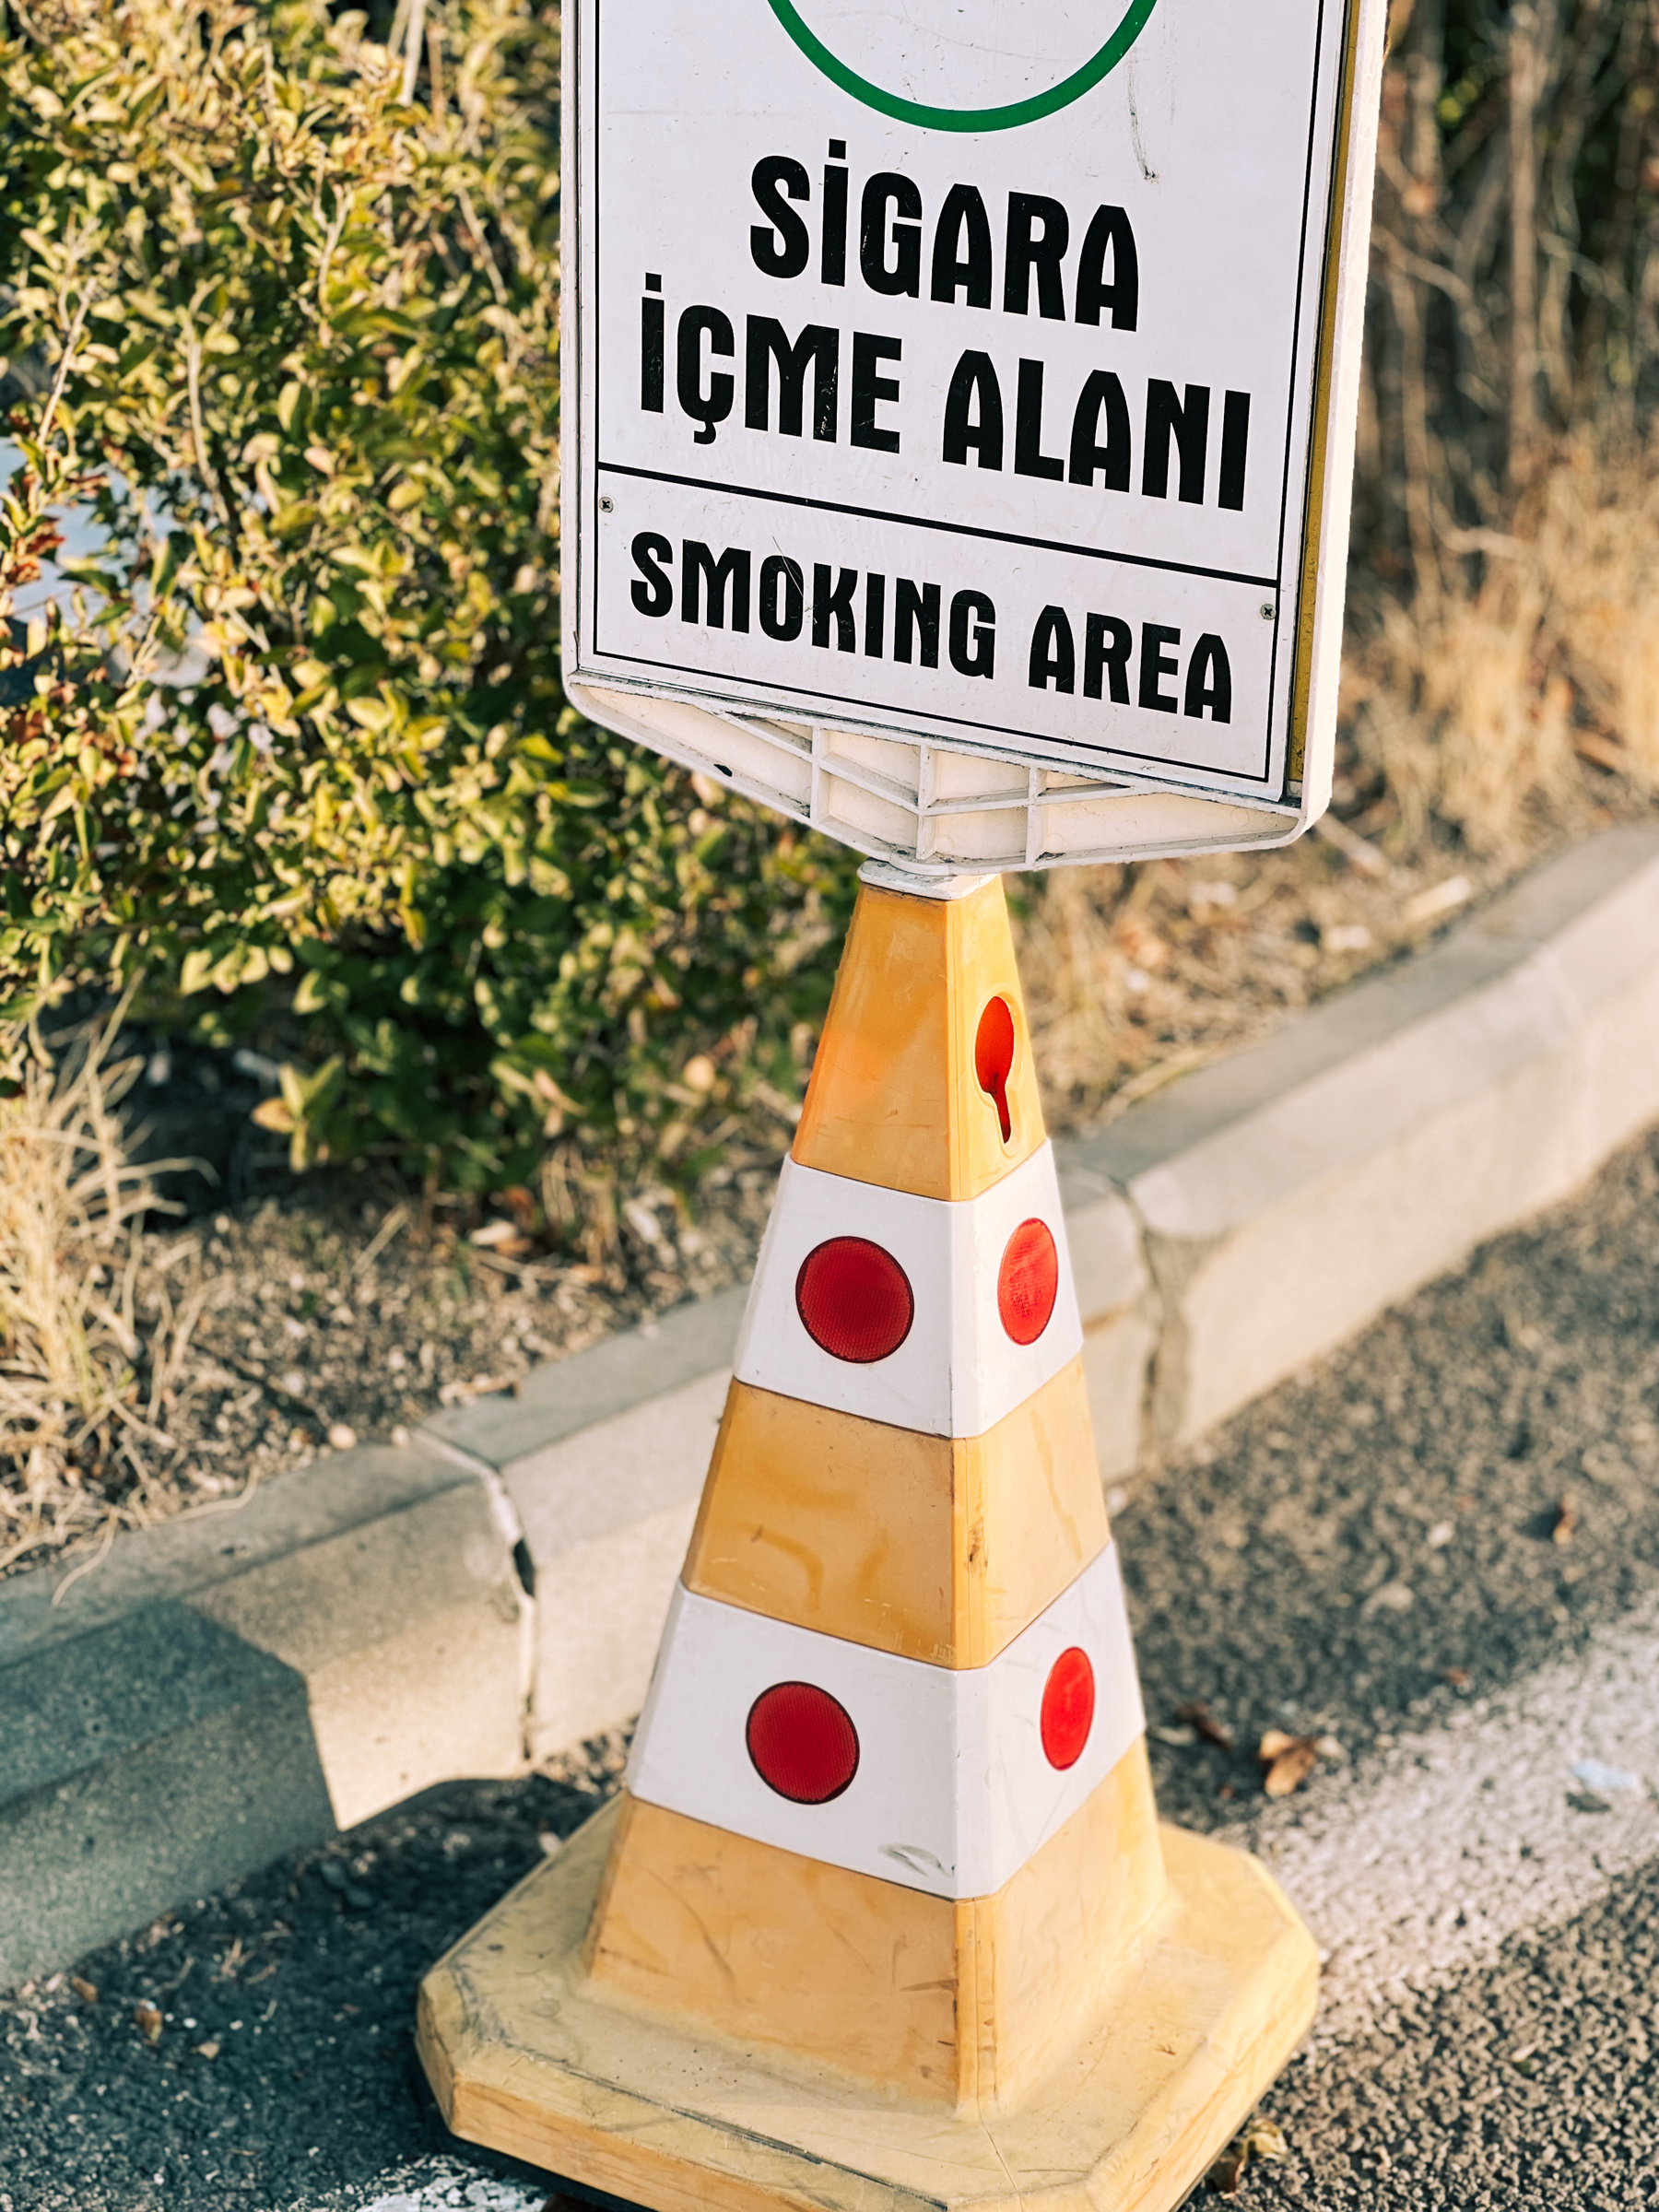 Smoking area sign.